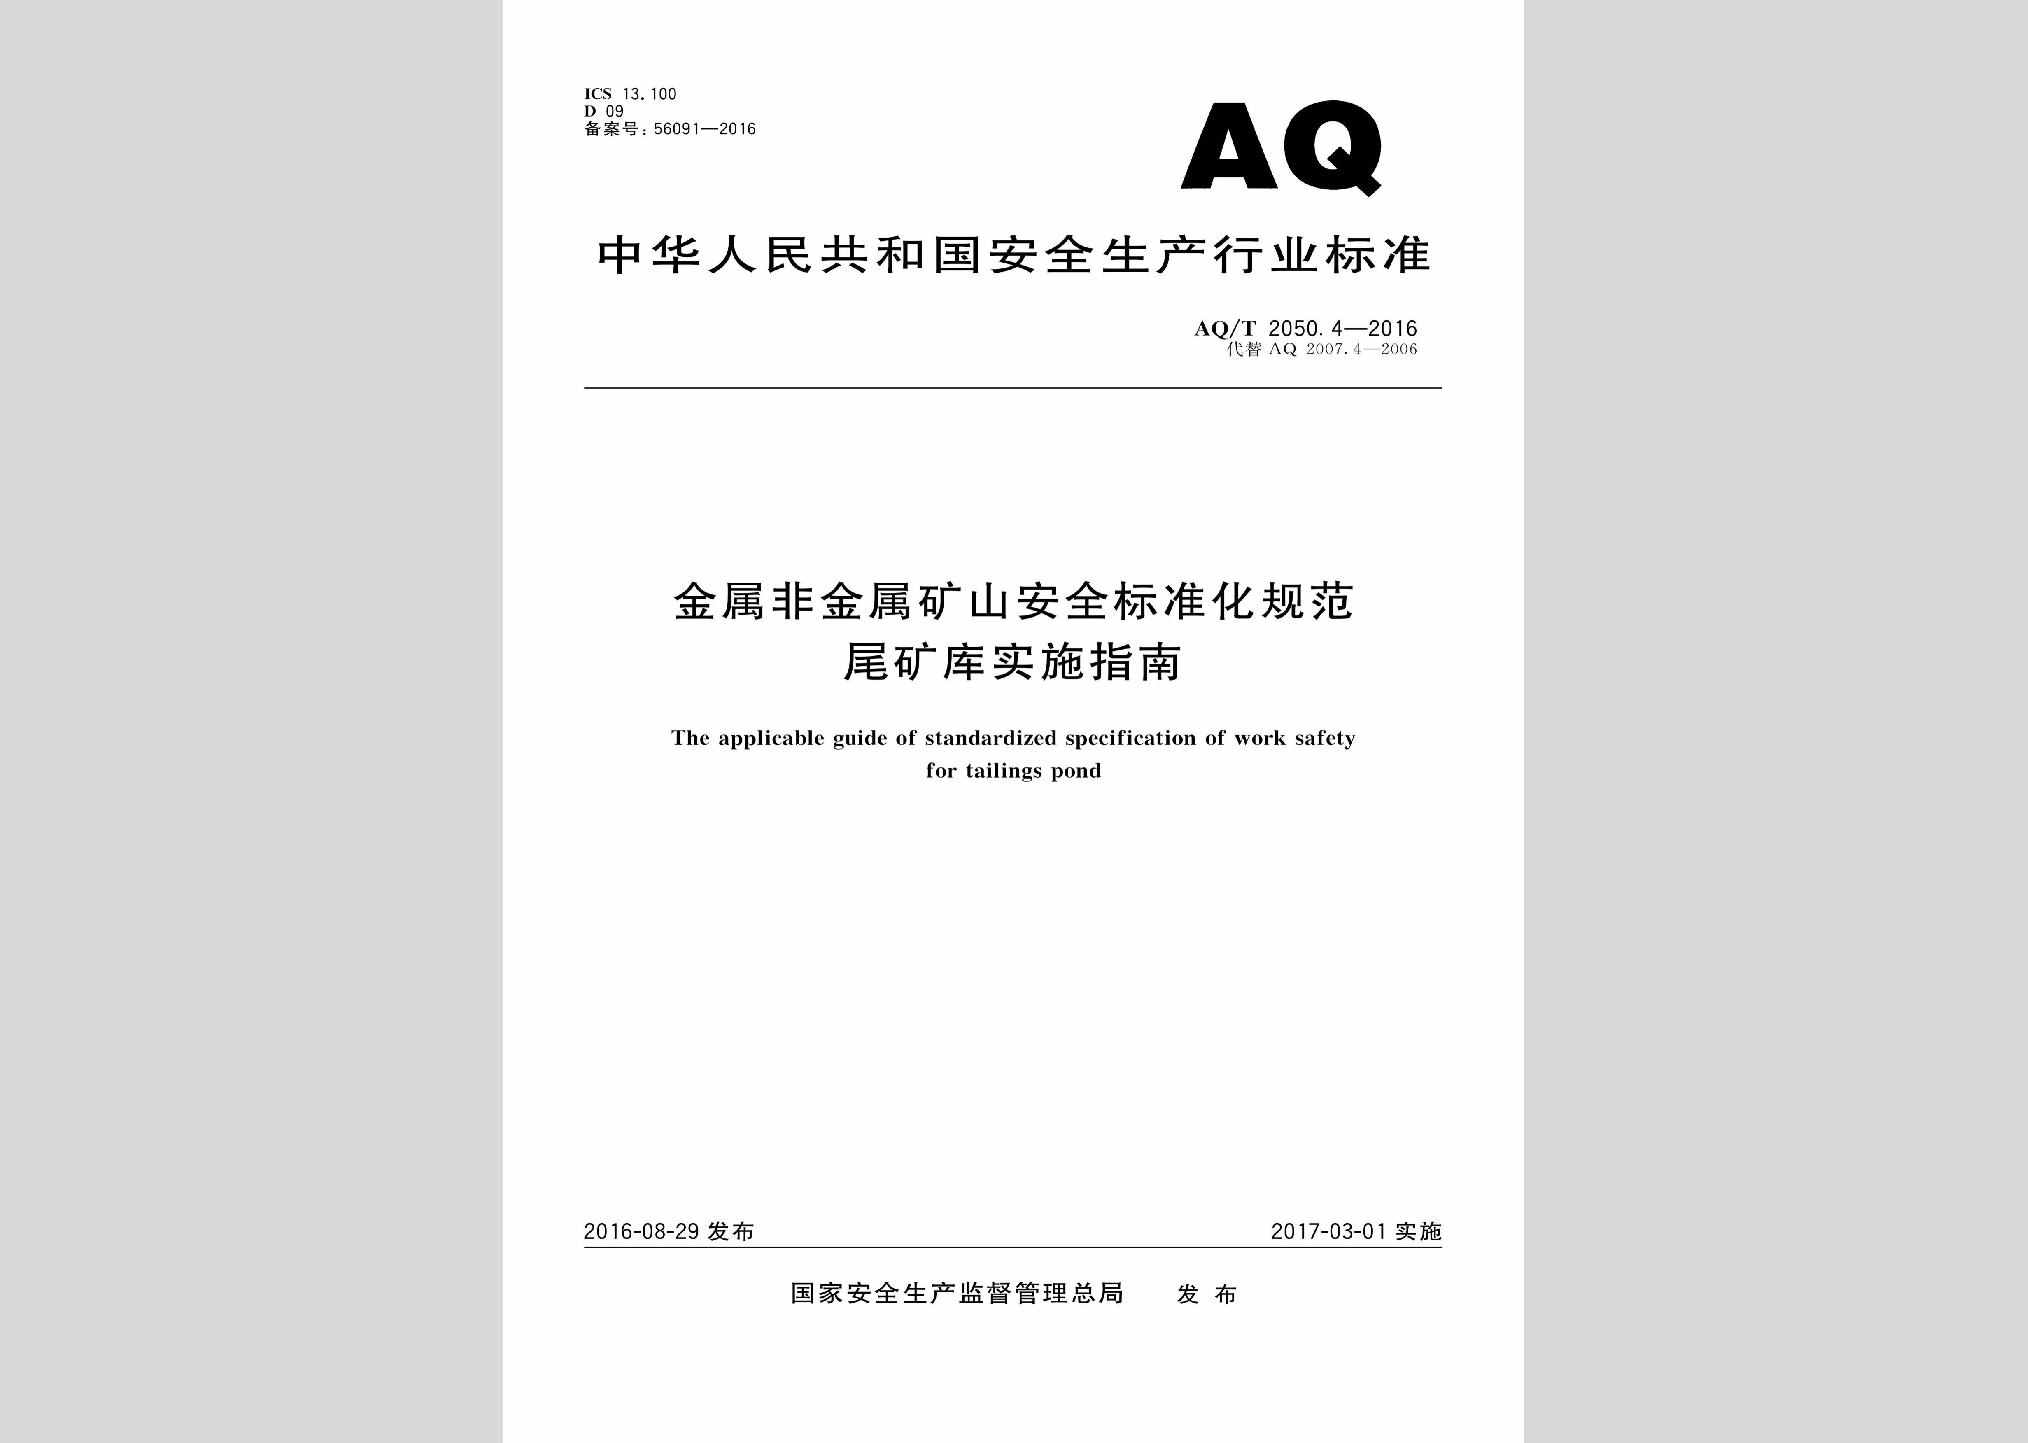 AQ/T2050.4-2016：金属非金属矿山安全标准化规范尾矿库实施指南